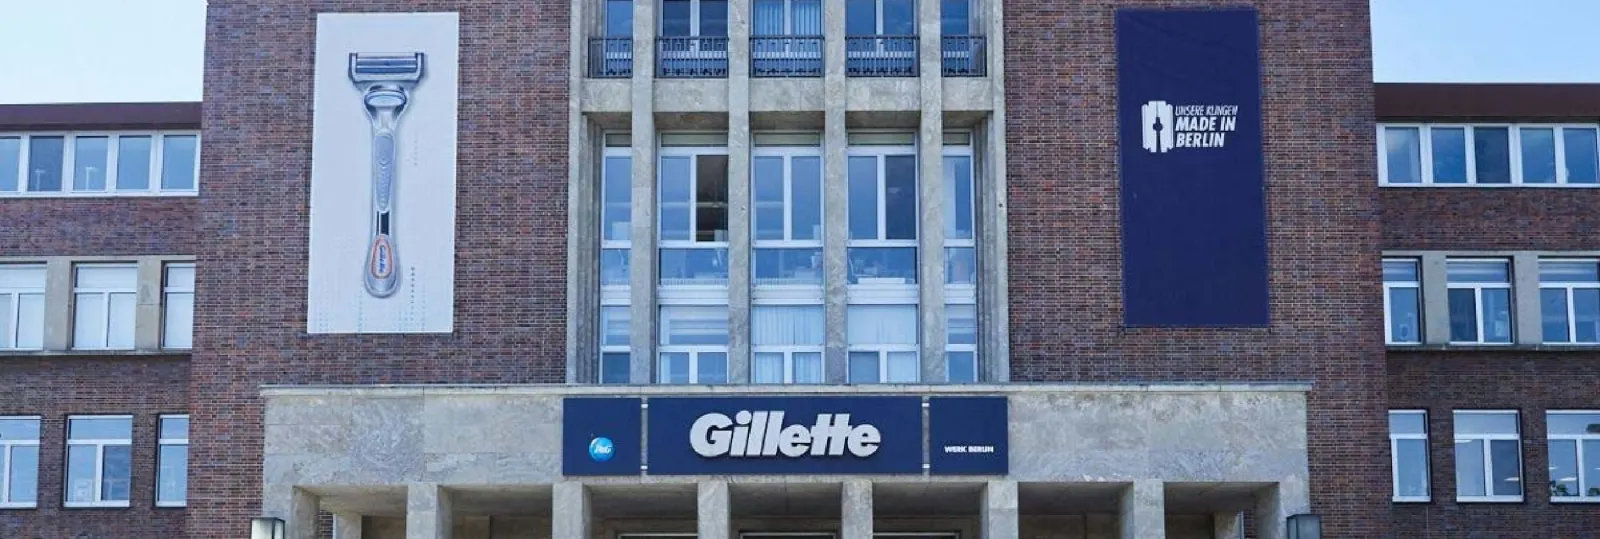 Gillette Werk Berlin: Über 80 Jahre Innovation